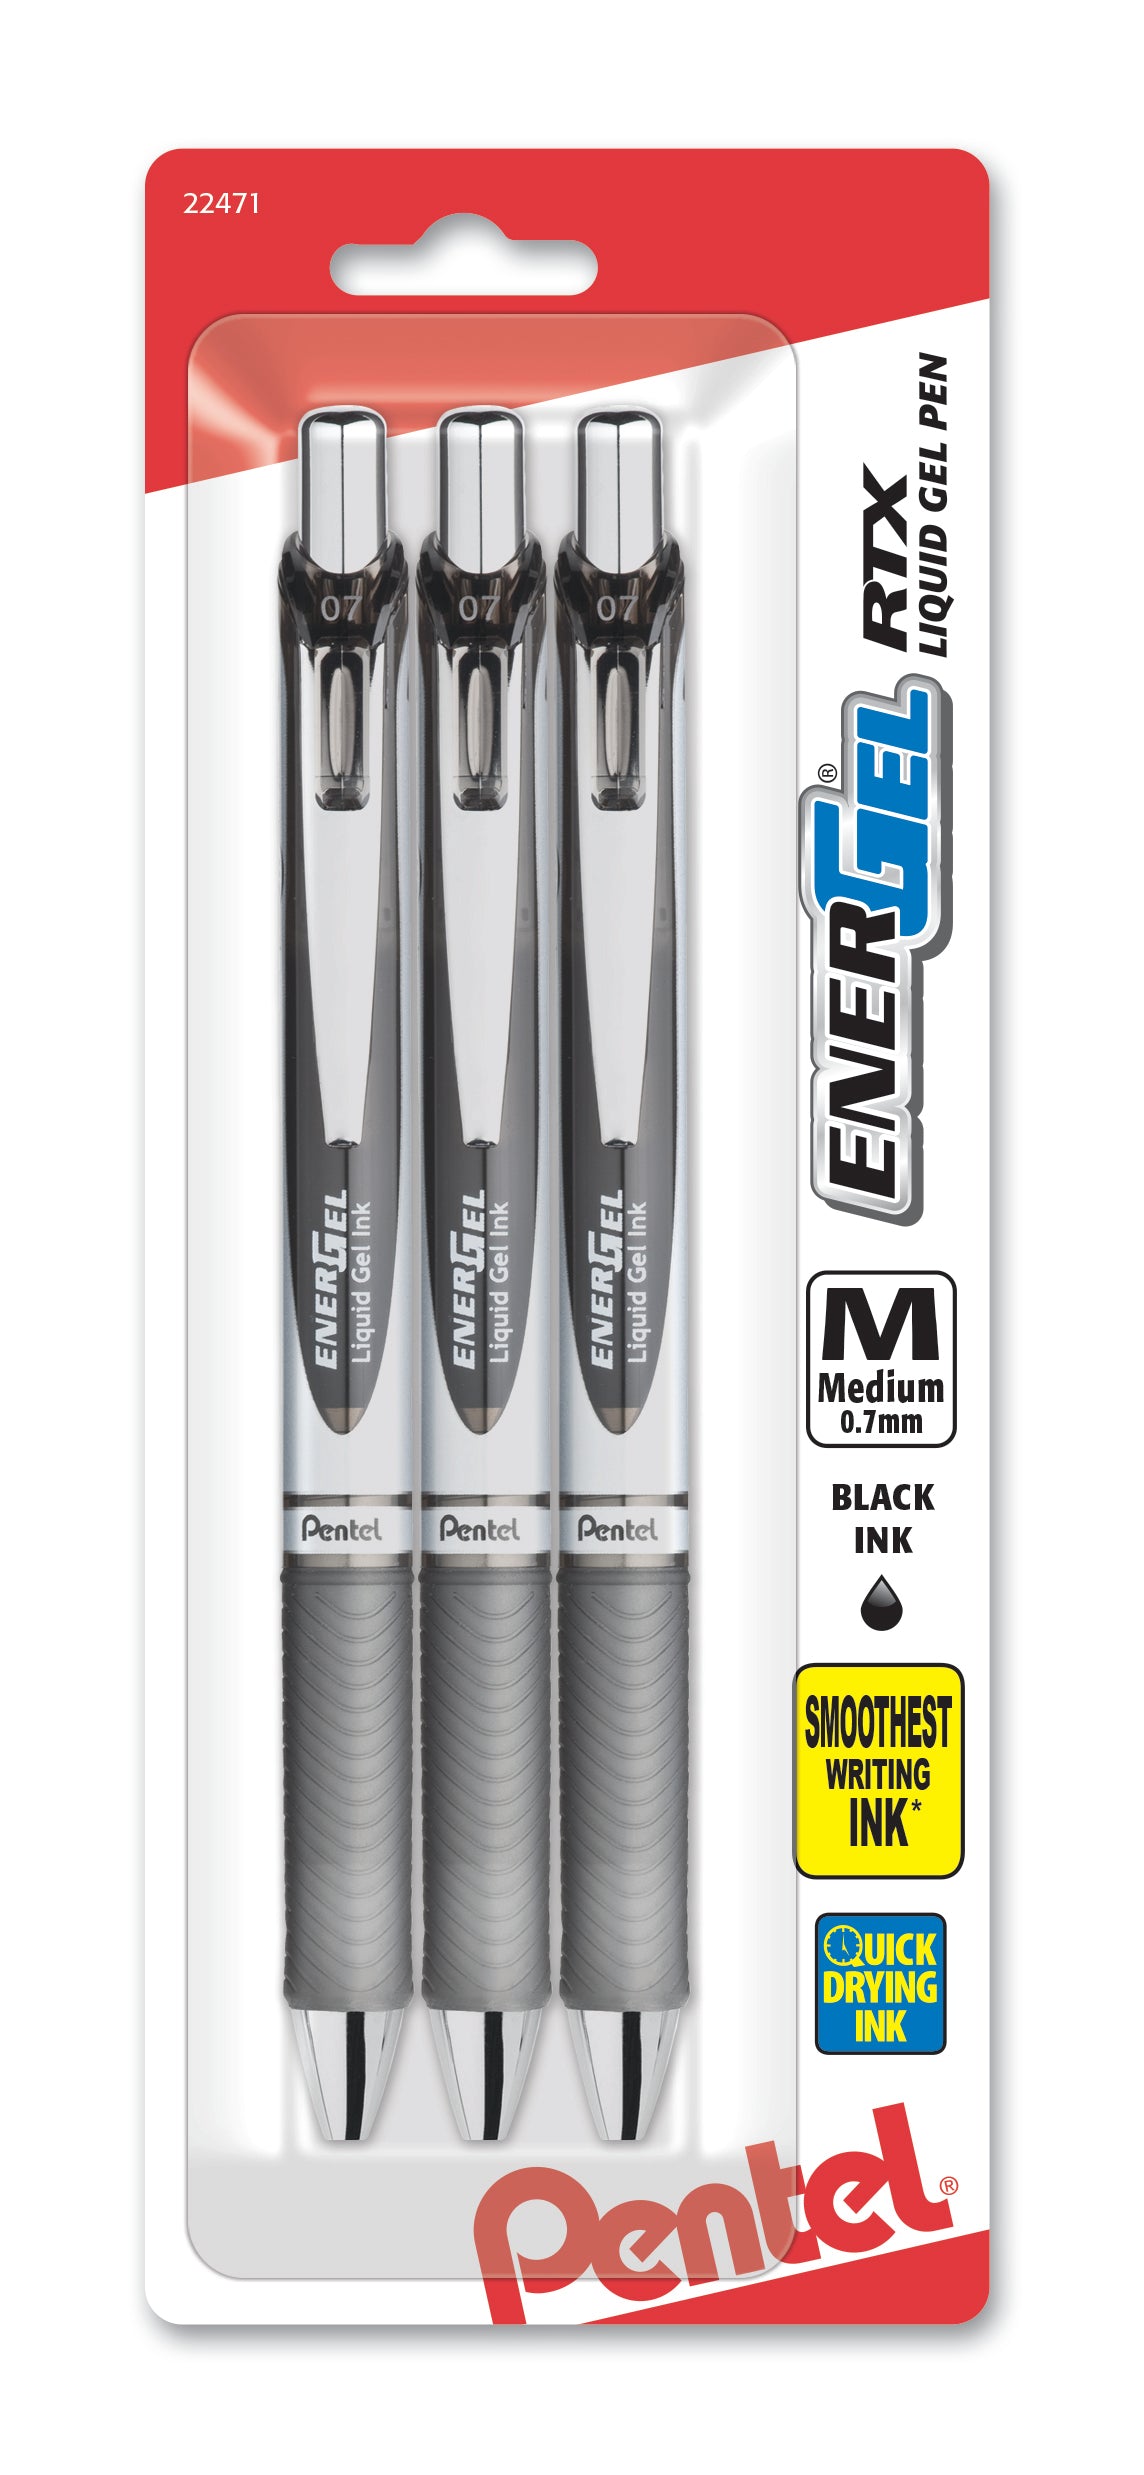  Pentel EnerGel Deluxe Liquid Gel Pen 130861